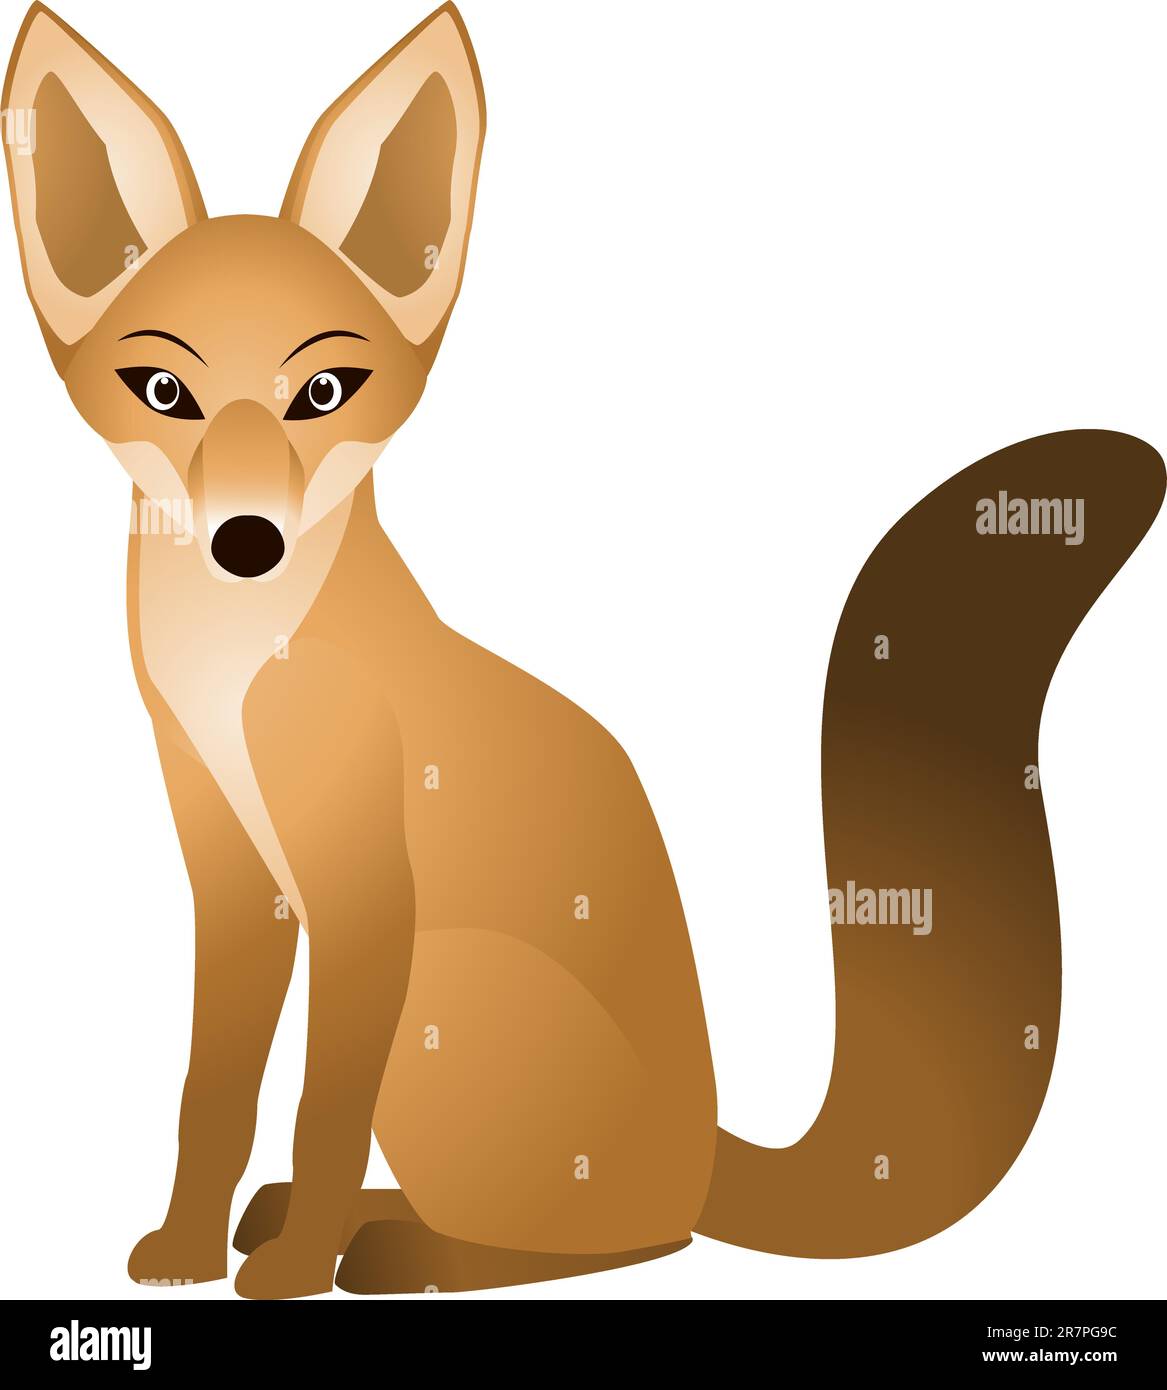 Vector illustration of fox cartoon Stock Vector